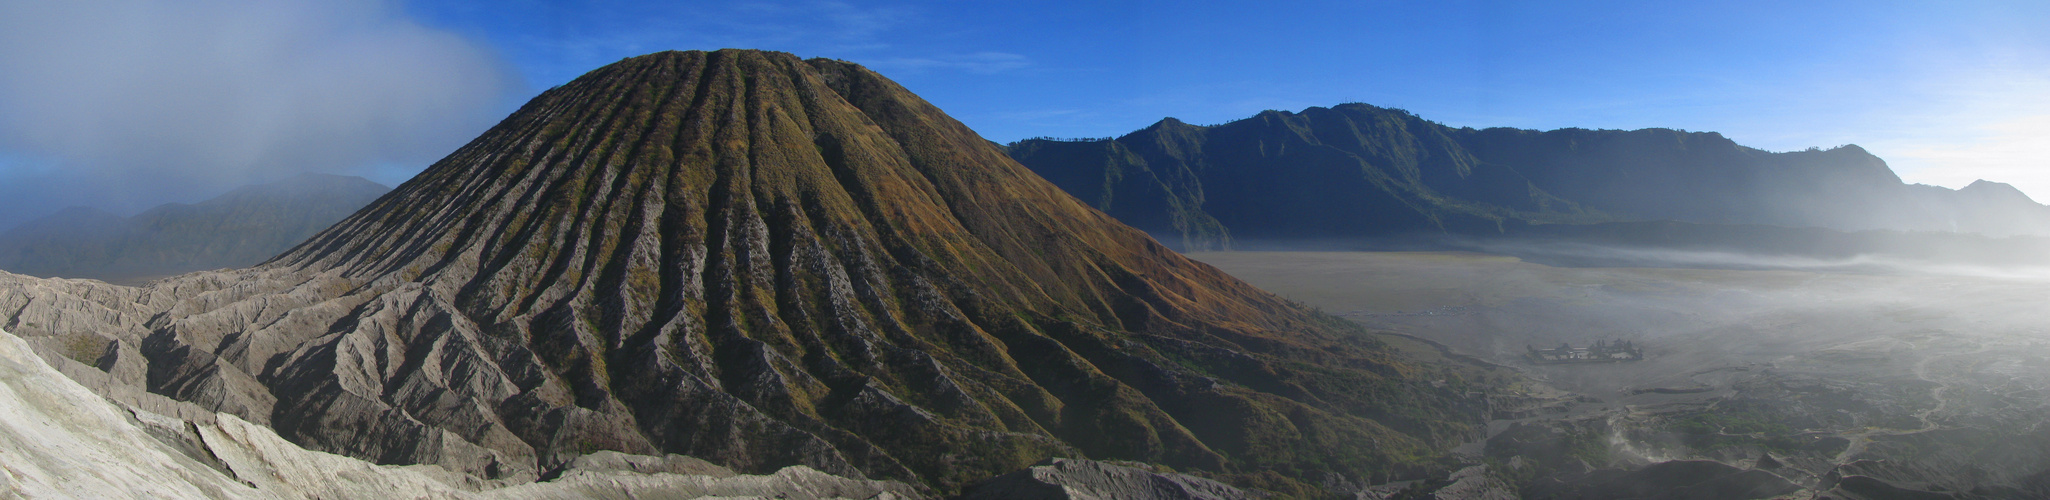 Panorama aus der Sicht vom Mount Bromo (Java)